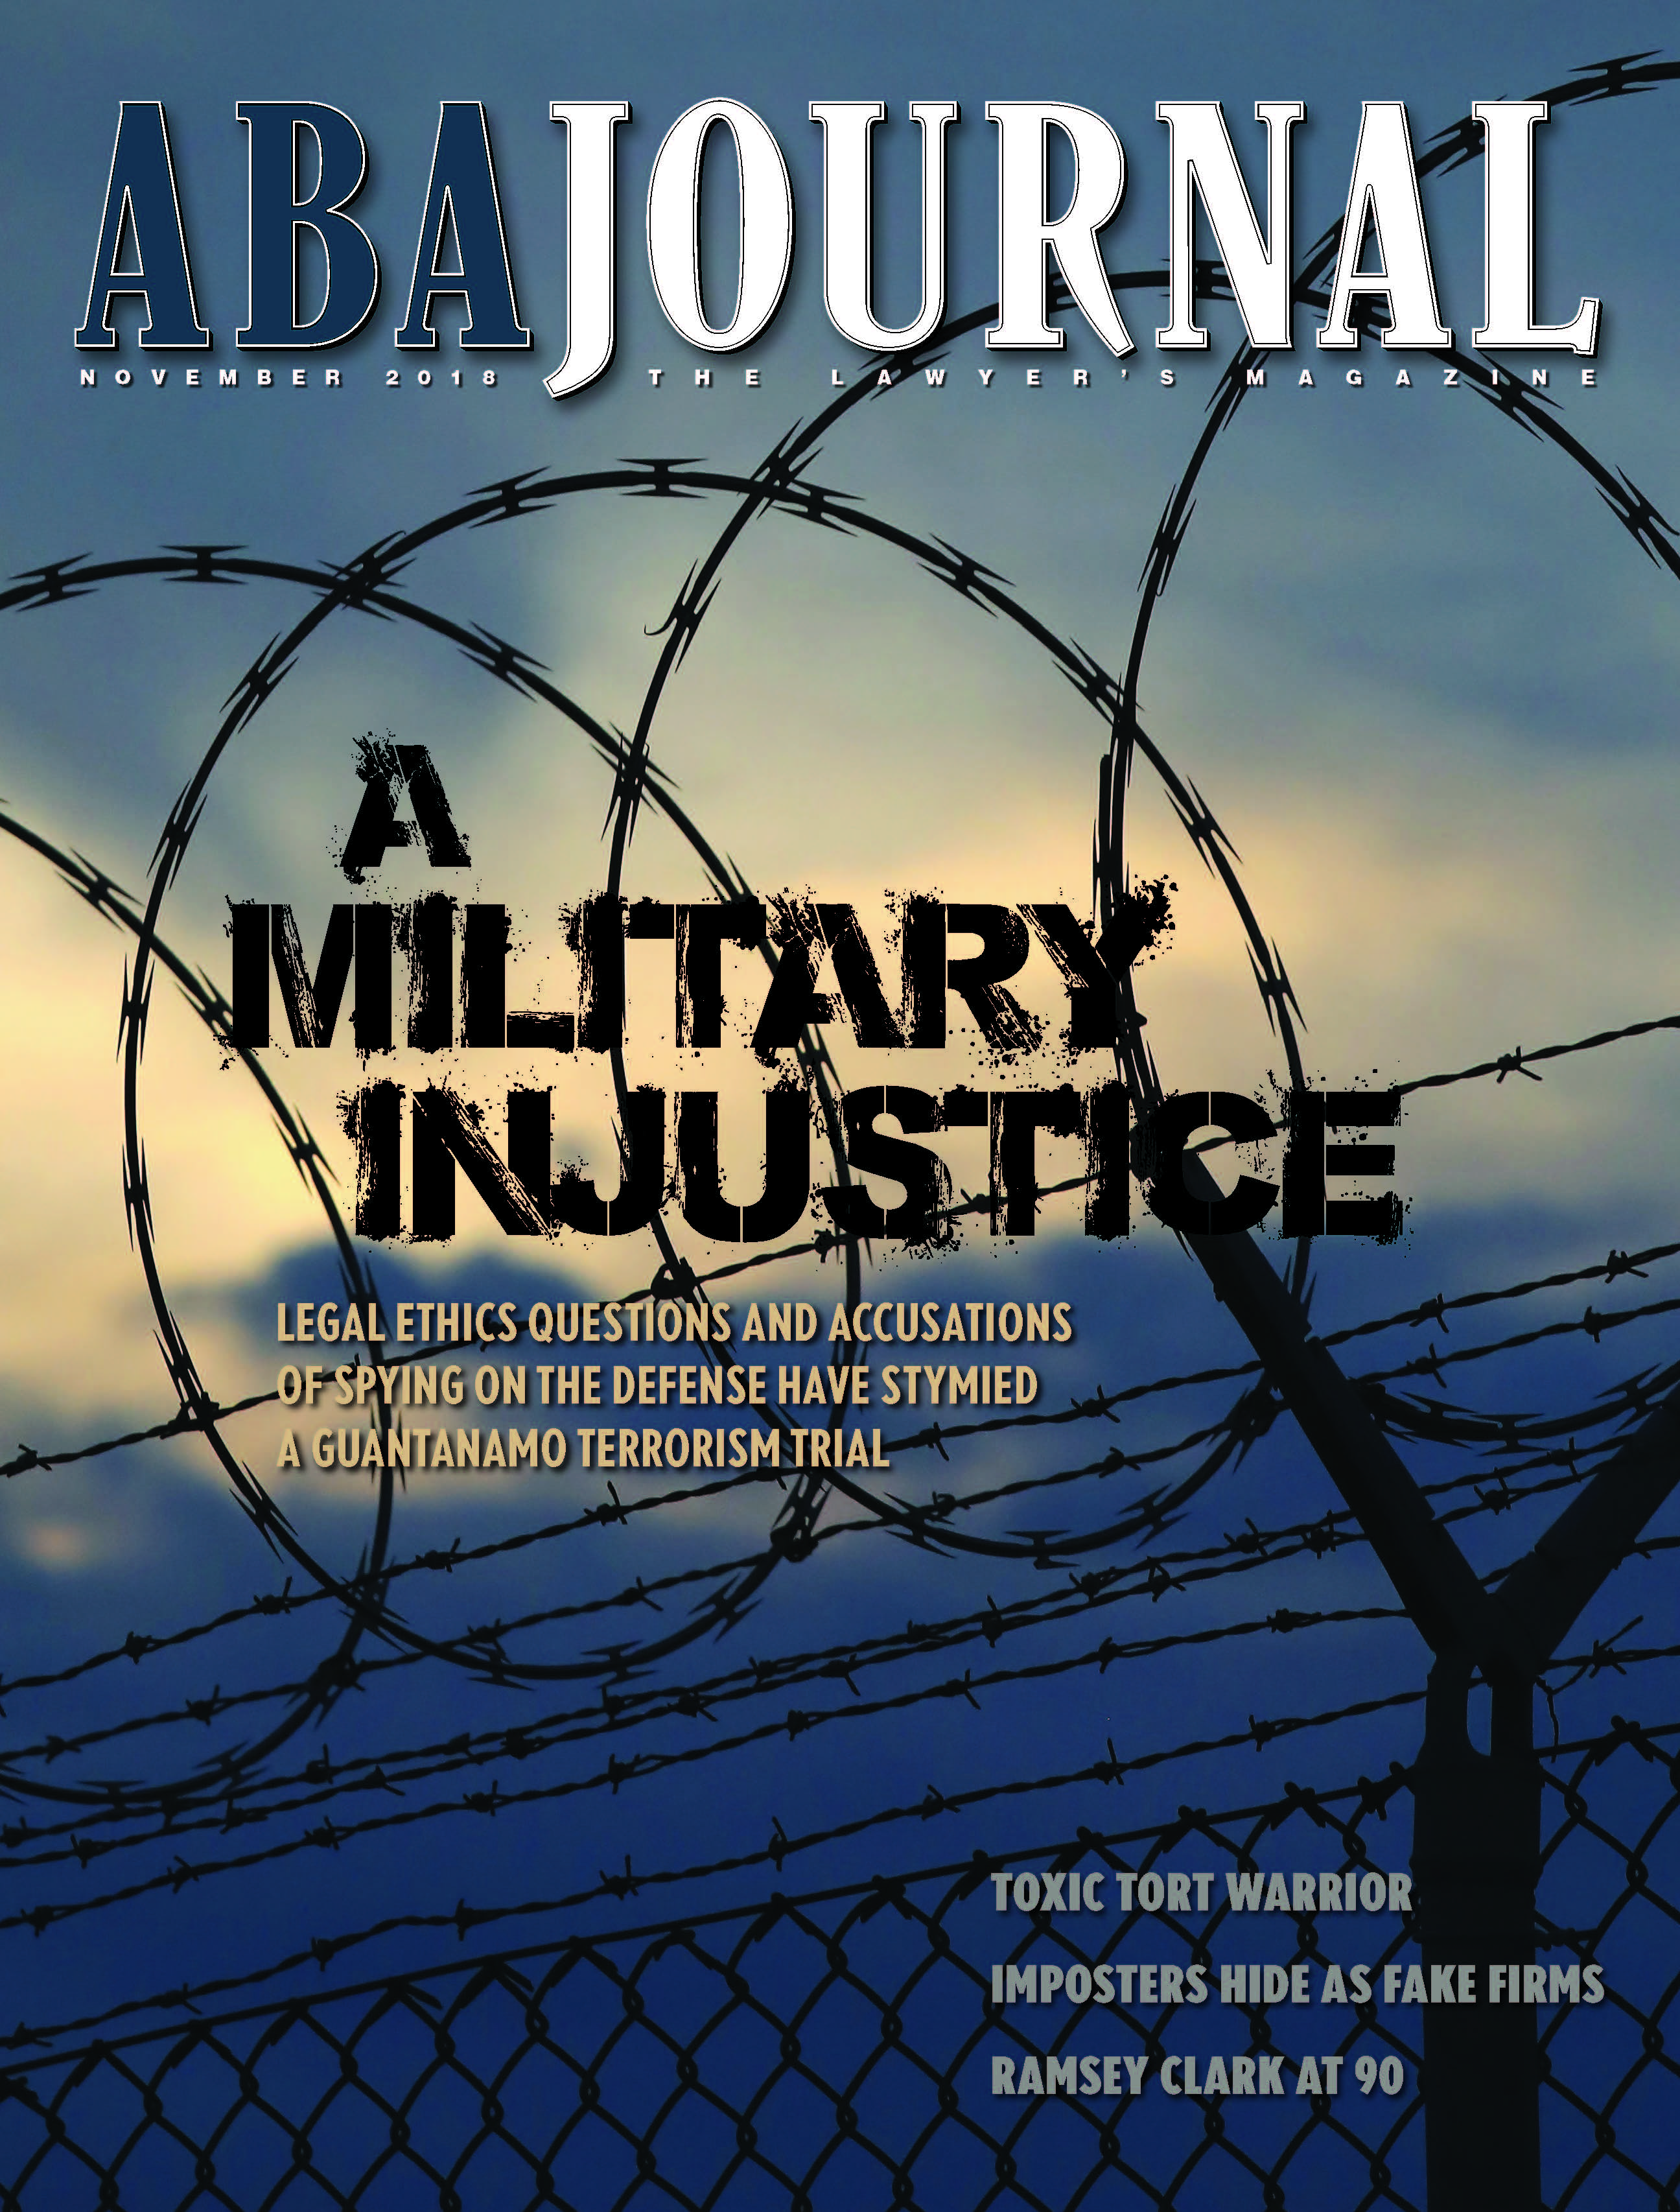 November 2018 ABA Journal cover.